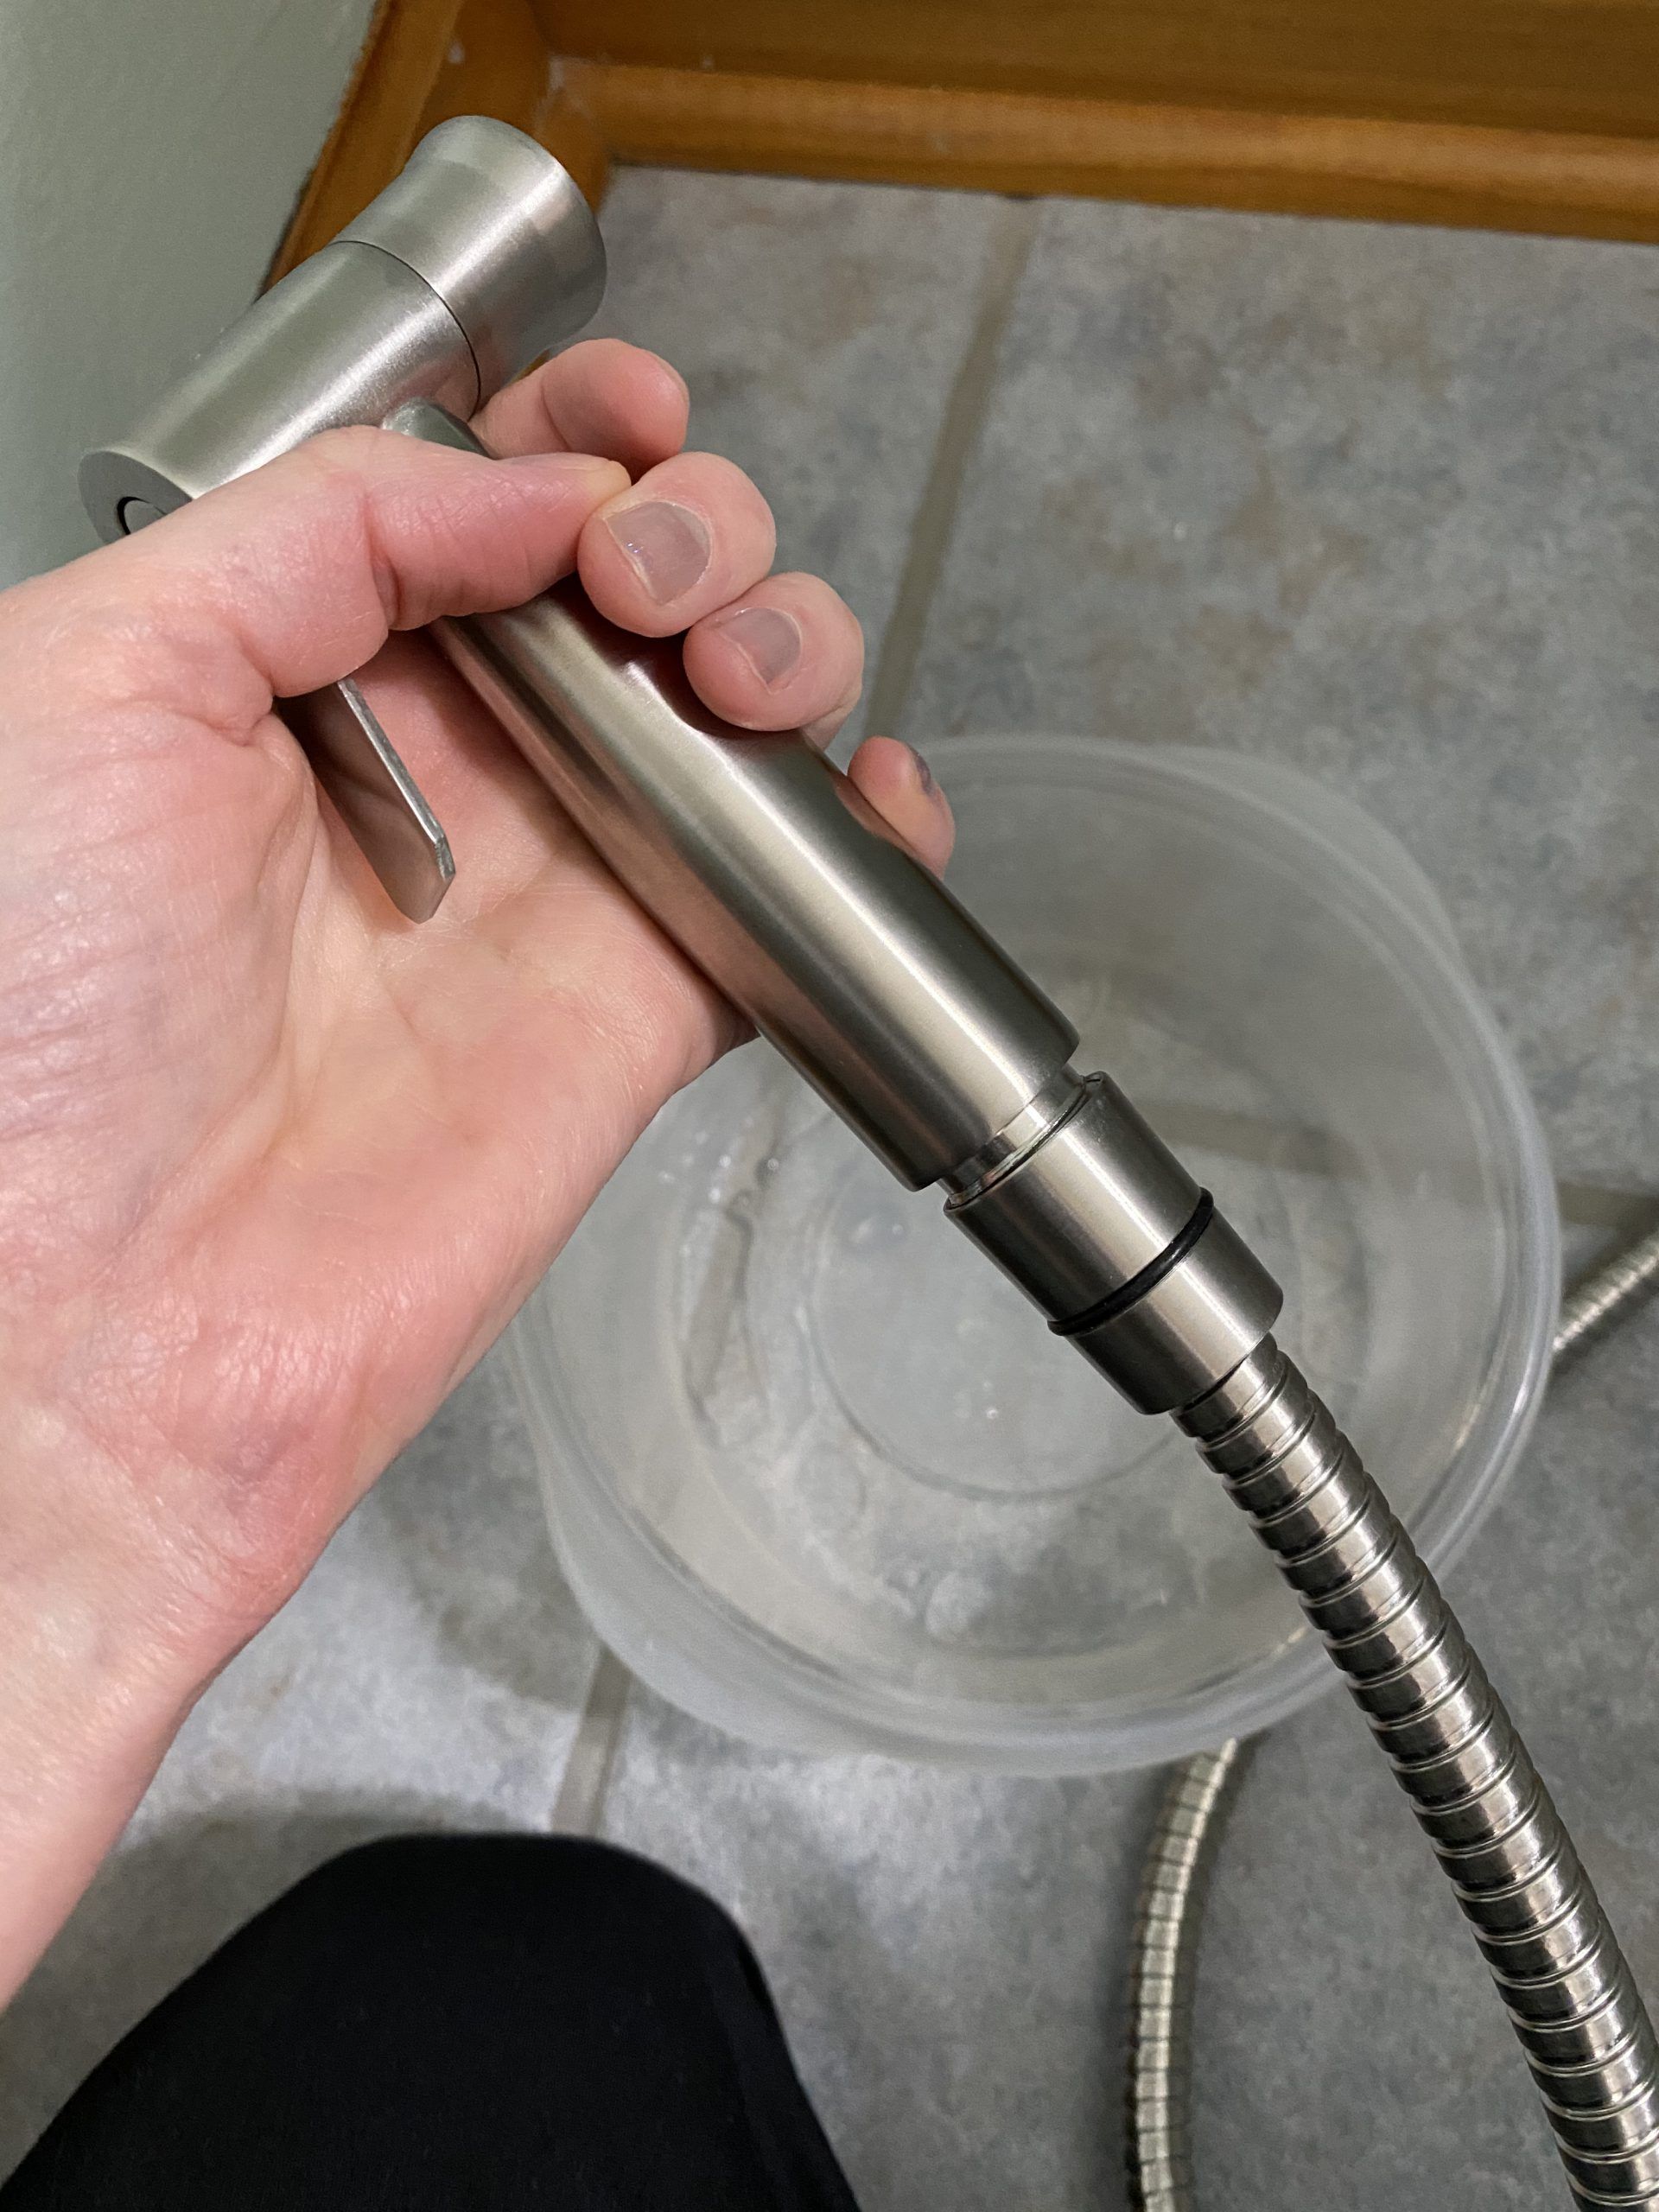 Handheld bidet sprayer attached to hose.